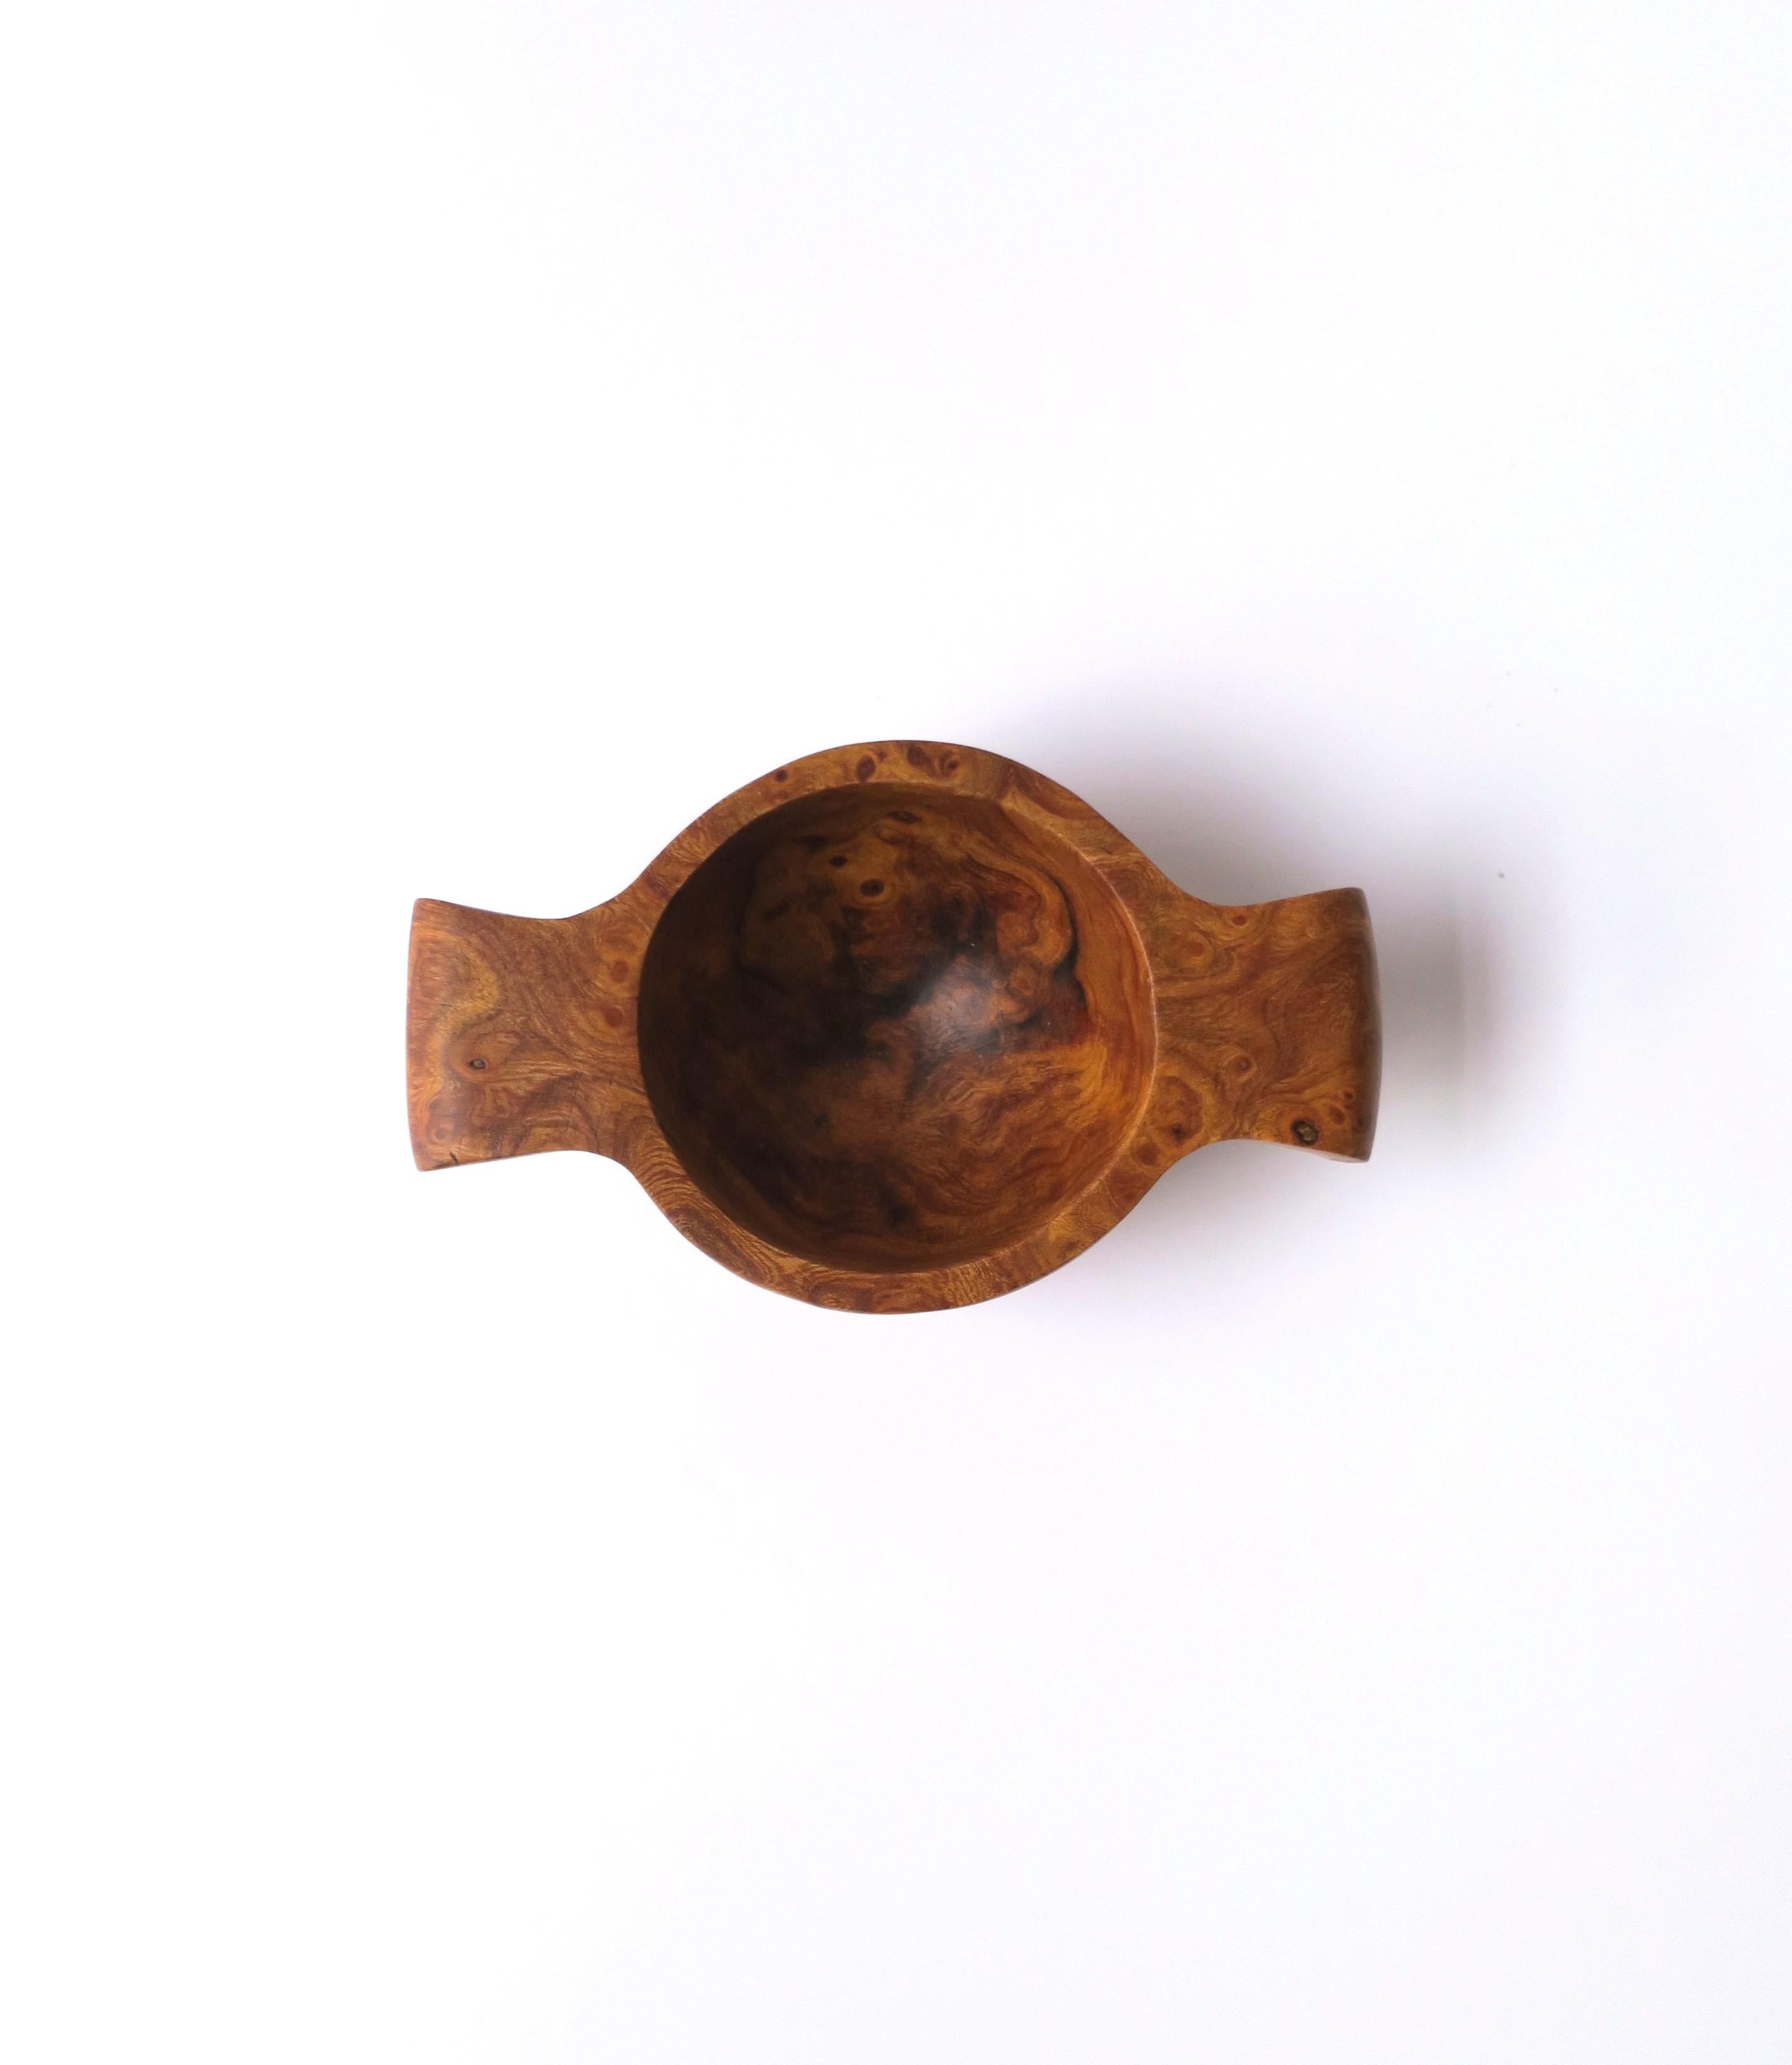 Un petit bol en bois de ronce avec des poignées, style moderne/minimaliste organique, vers la fin du 20e siècle ou le début du 21e siècle. La pièce est fabriquée à partir d'un seul morceau de loupe. La pièce peut contenir de petits objets sur une